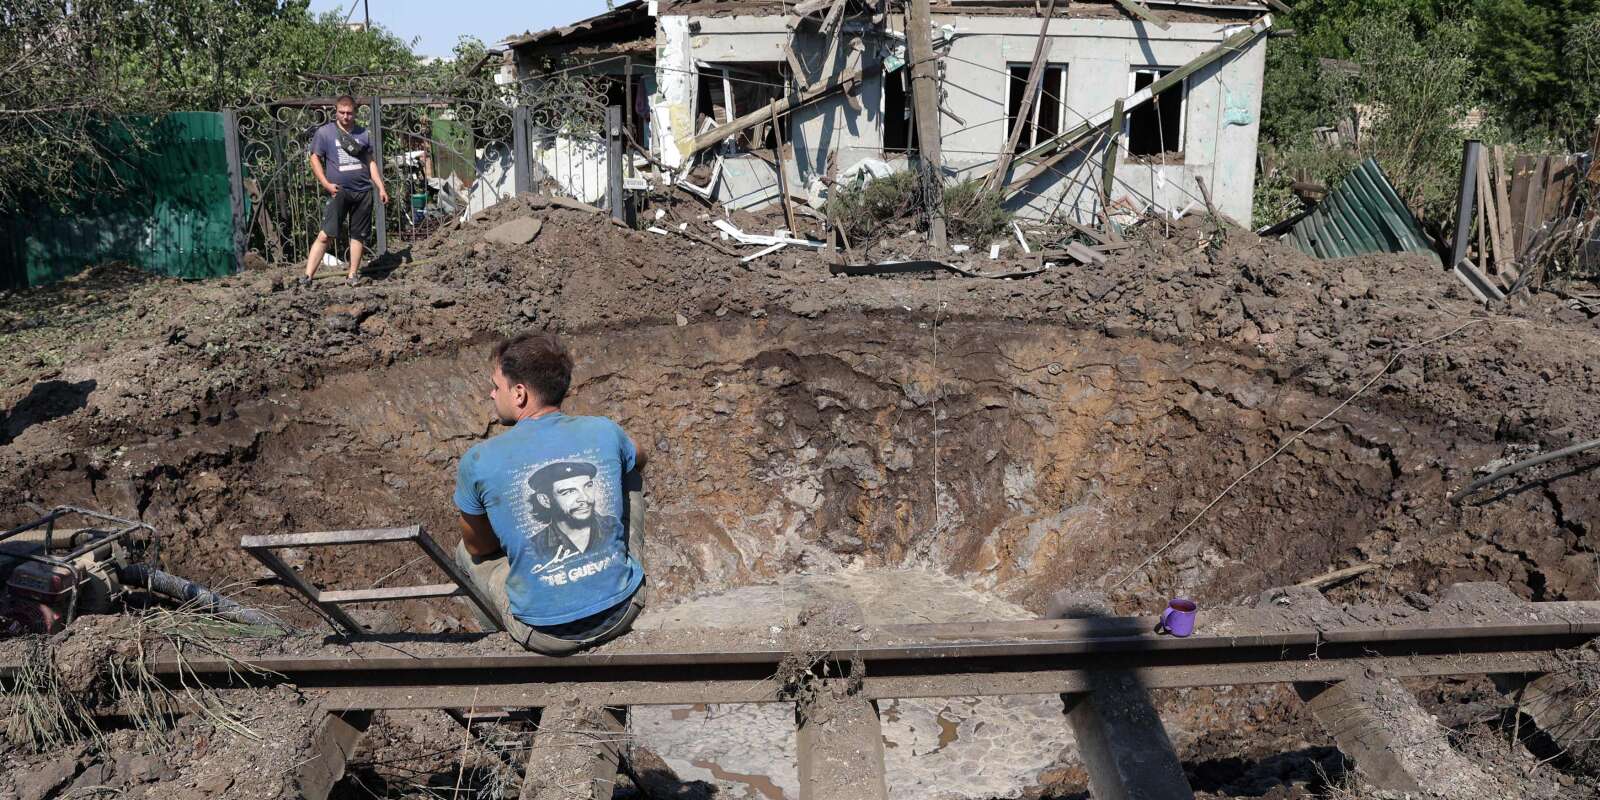 Des employés des services communaux travaillent autour d’un cratère asuite à une frappe de missile russe dans la ville de Konstantinovka, dans la région de Donetsk, le 16 juillet 2022.